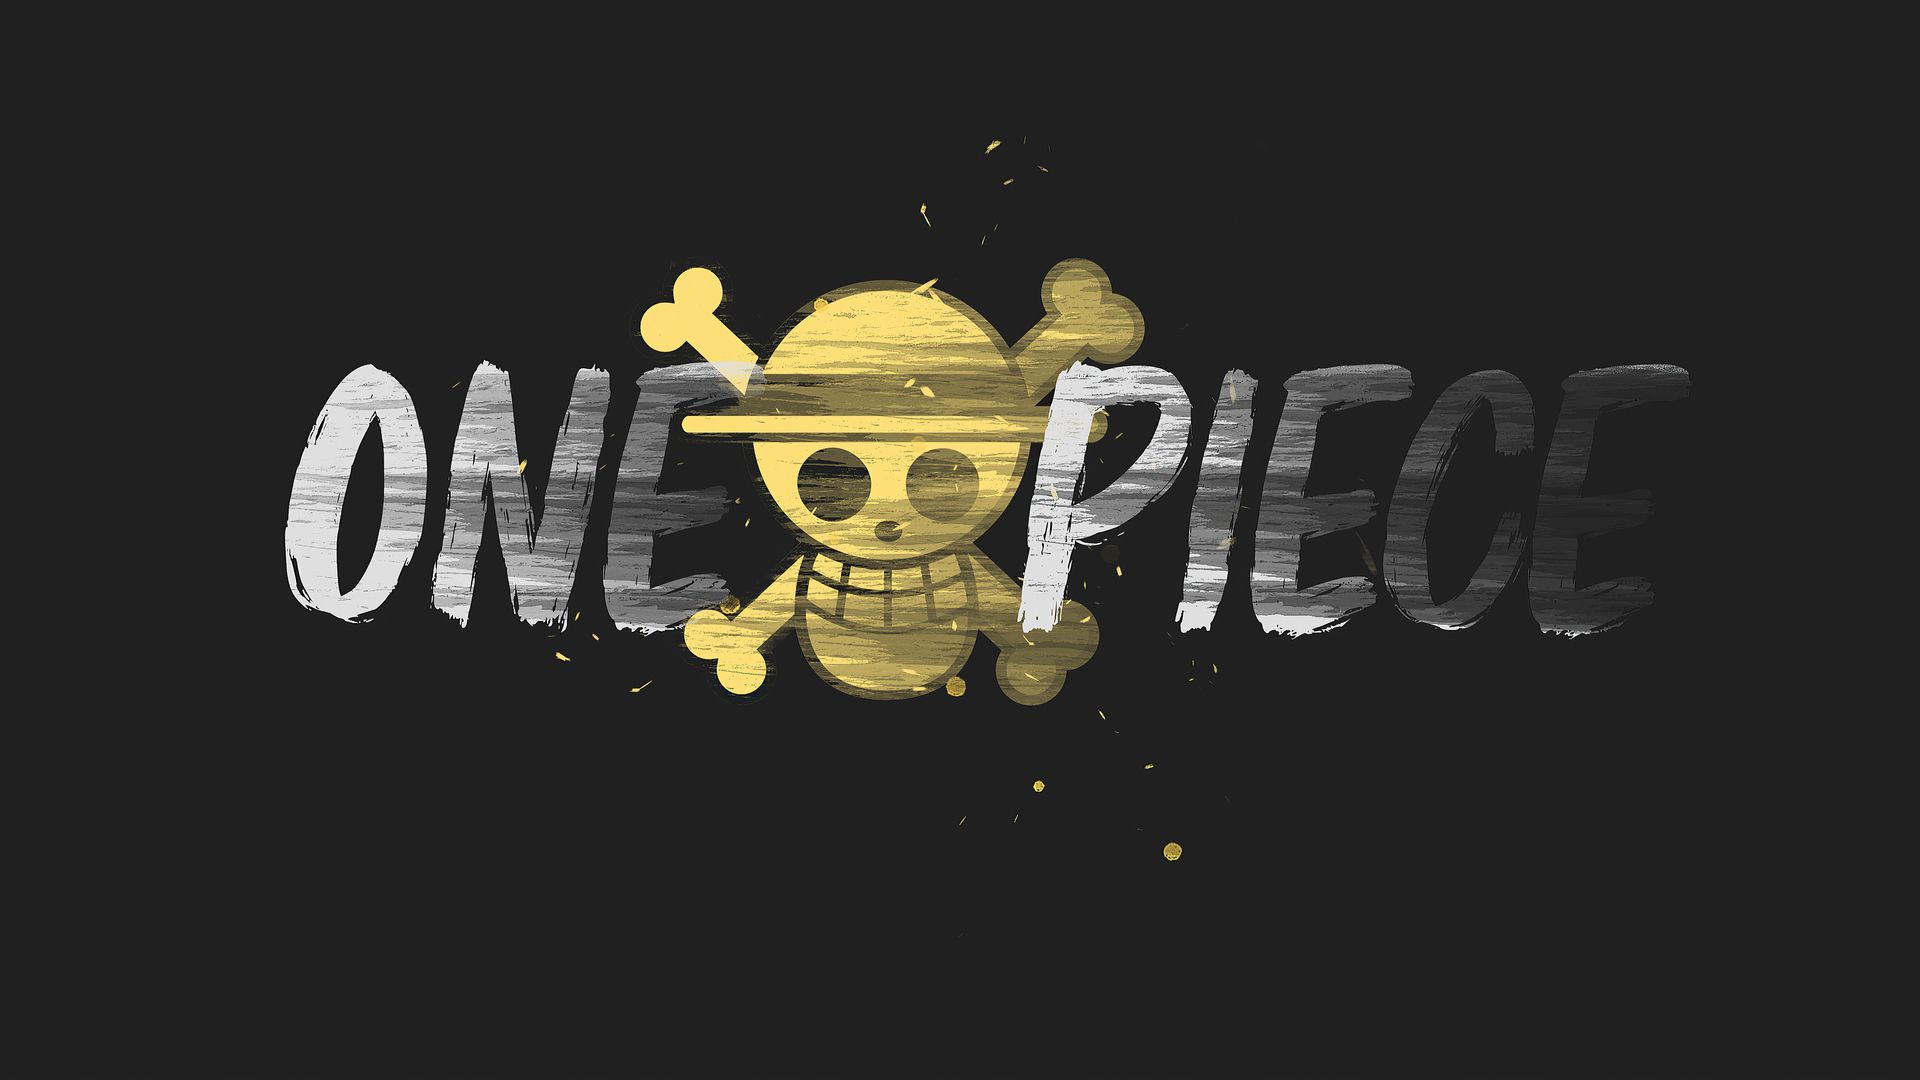 Hình nền laptop One Piece: Không thể bỏ lỡ bất cứ một fan One Piece nào, hình nền laptop One Piece hứa hẹn sẽ đưa người xem đến thế giới phim hoạt hình đầy phiêu lưu của Luffy và nhóm của mình. Với các hình ảnh đầy màu sắc, hình nền laptop One Piece sẽ truyền cảm hứng mới cho những người đam mê One Piece.